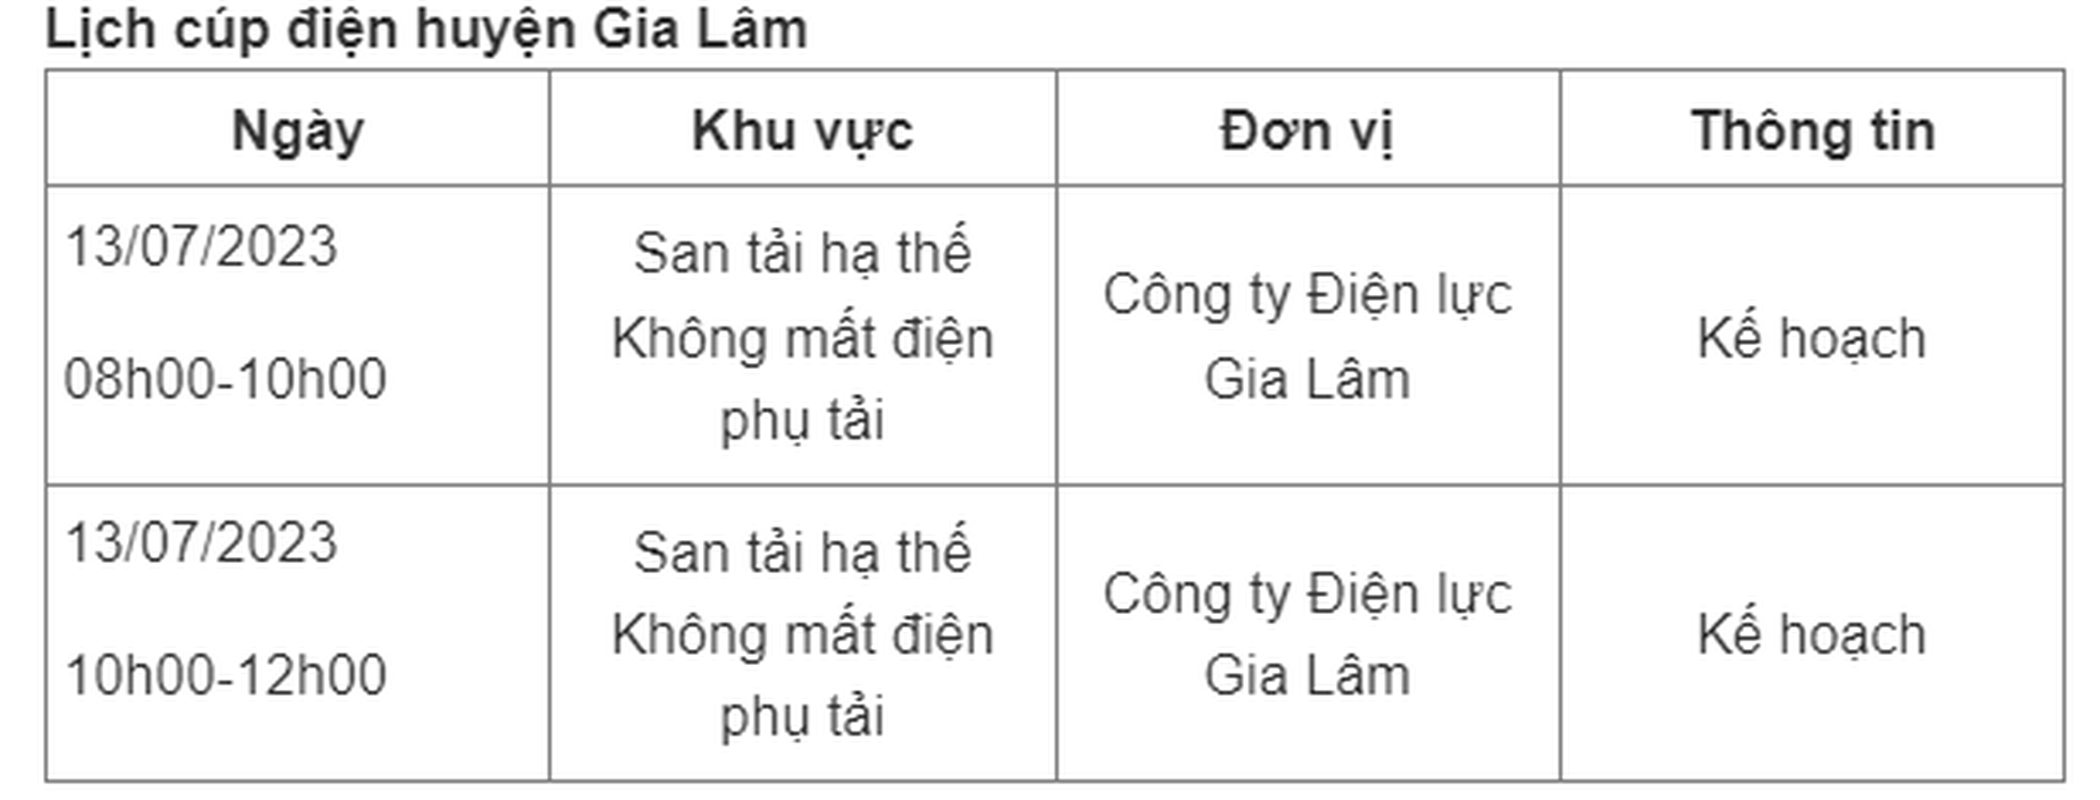 Lich cup dien Ha Noi ngay 13/7/2023: Nhieu noi mat dien tu sang toi chieu-Hinh-6